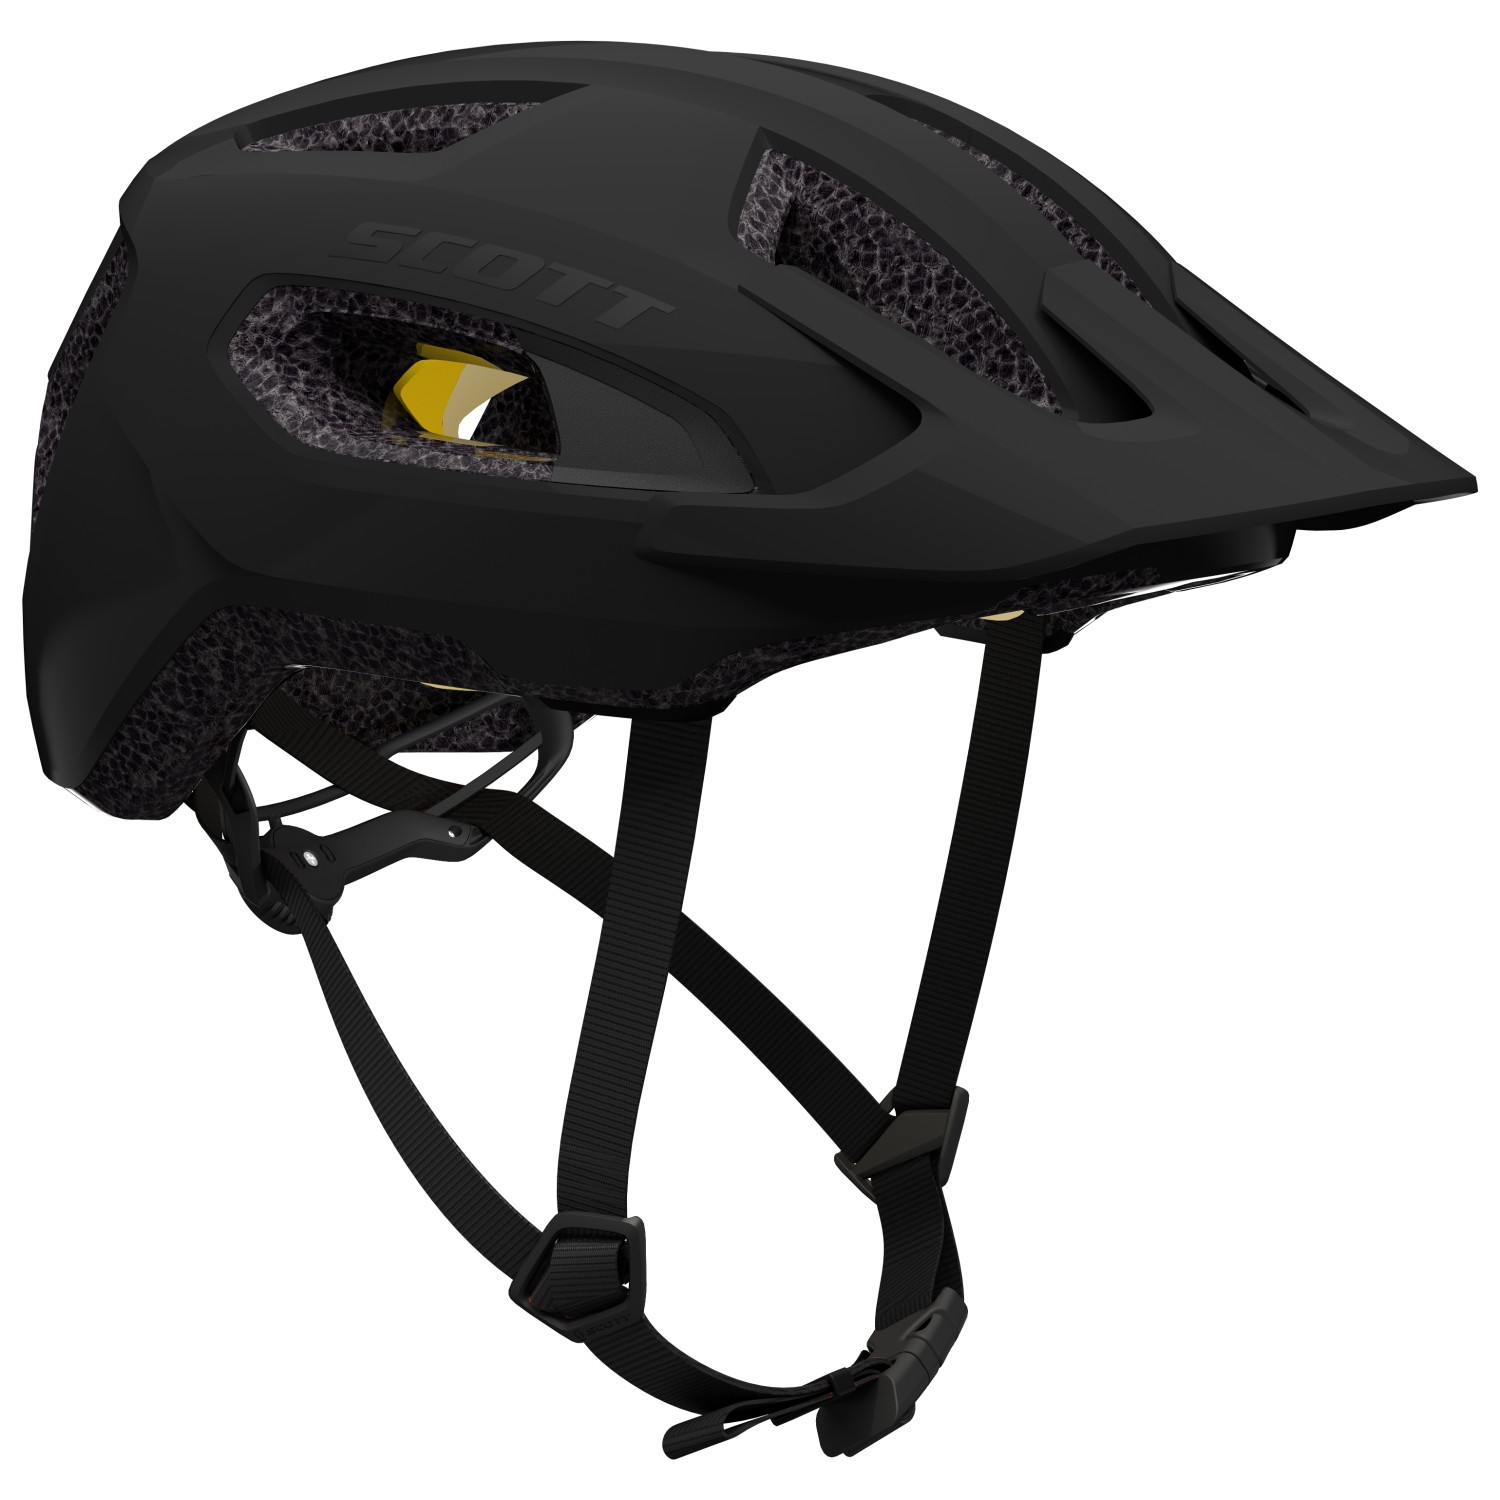 Велосипедный шлем Scott Supra Plus, цвет Black Matt шлем велосипедный sisak универсальный всесезонный детский спортивный шлем для горных велосипедов cobwebs